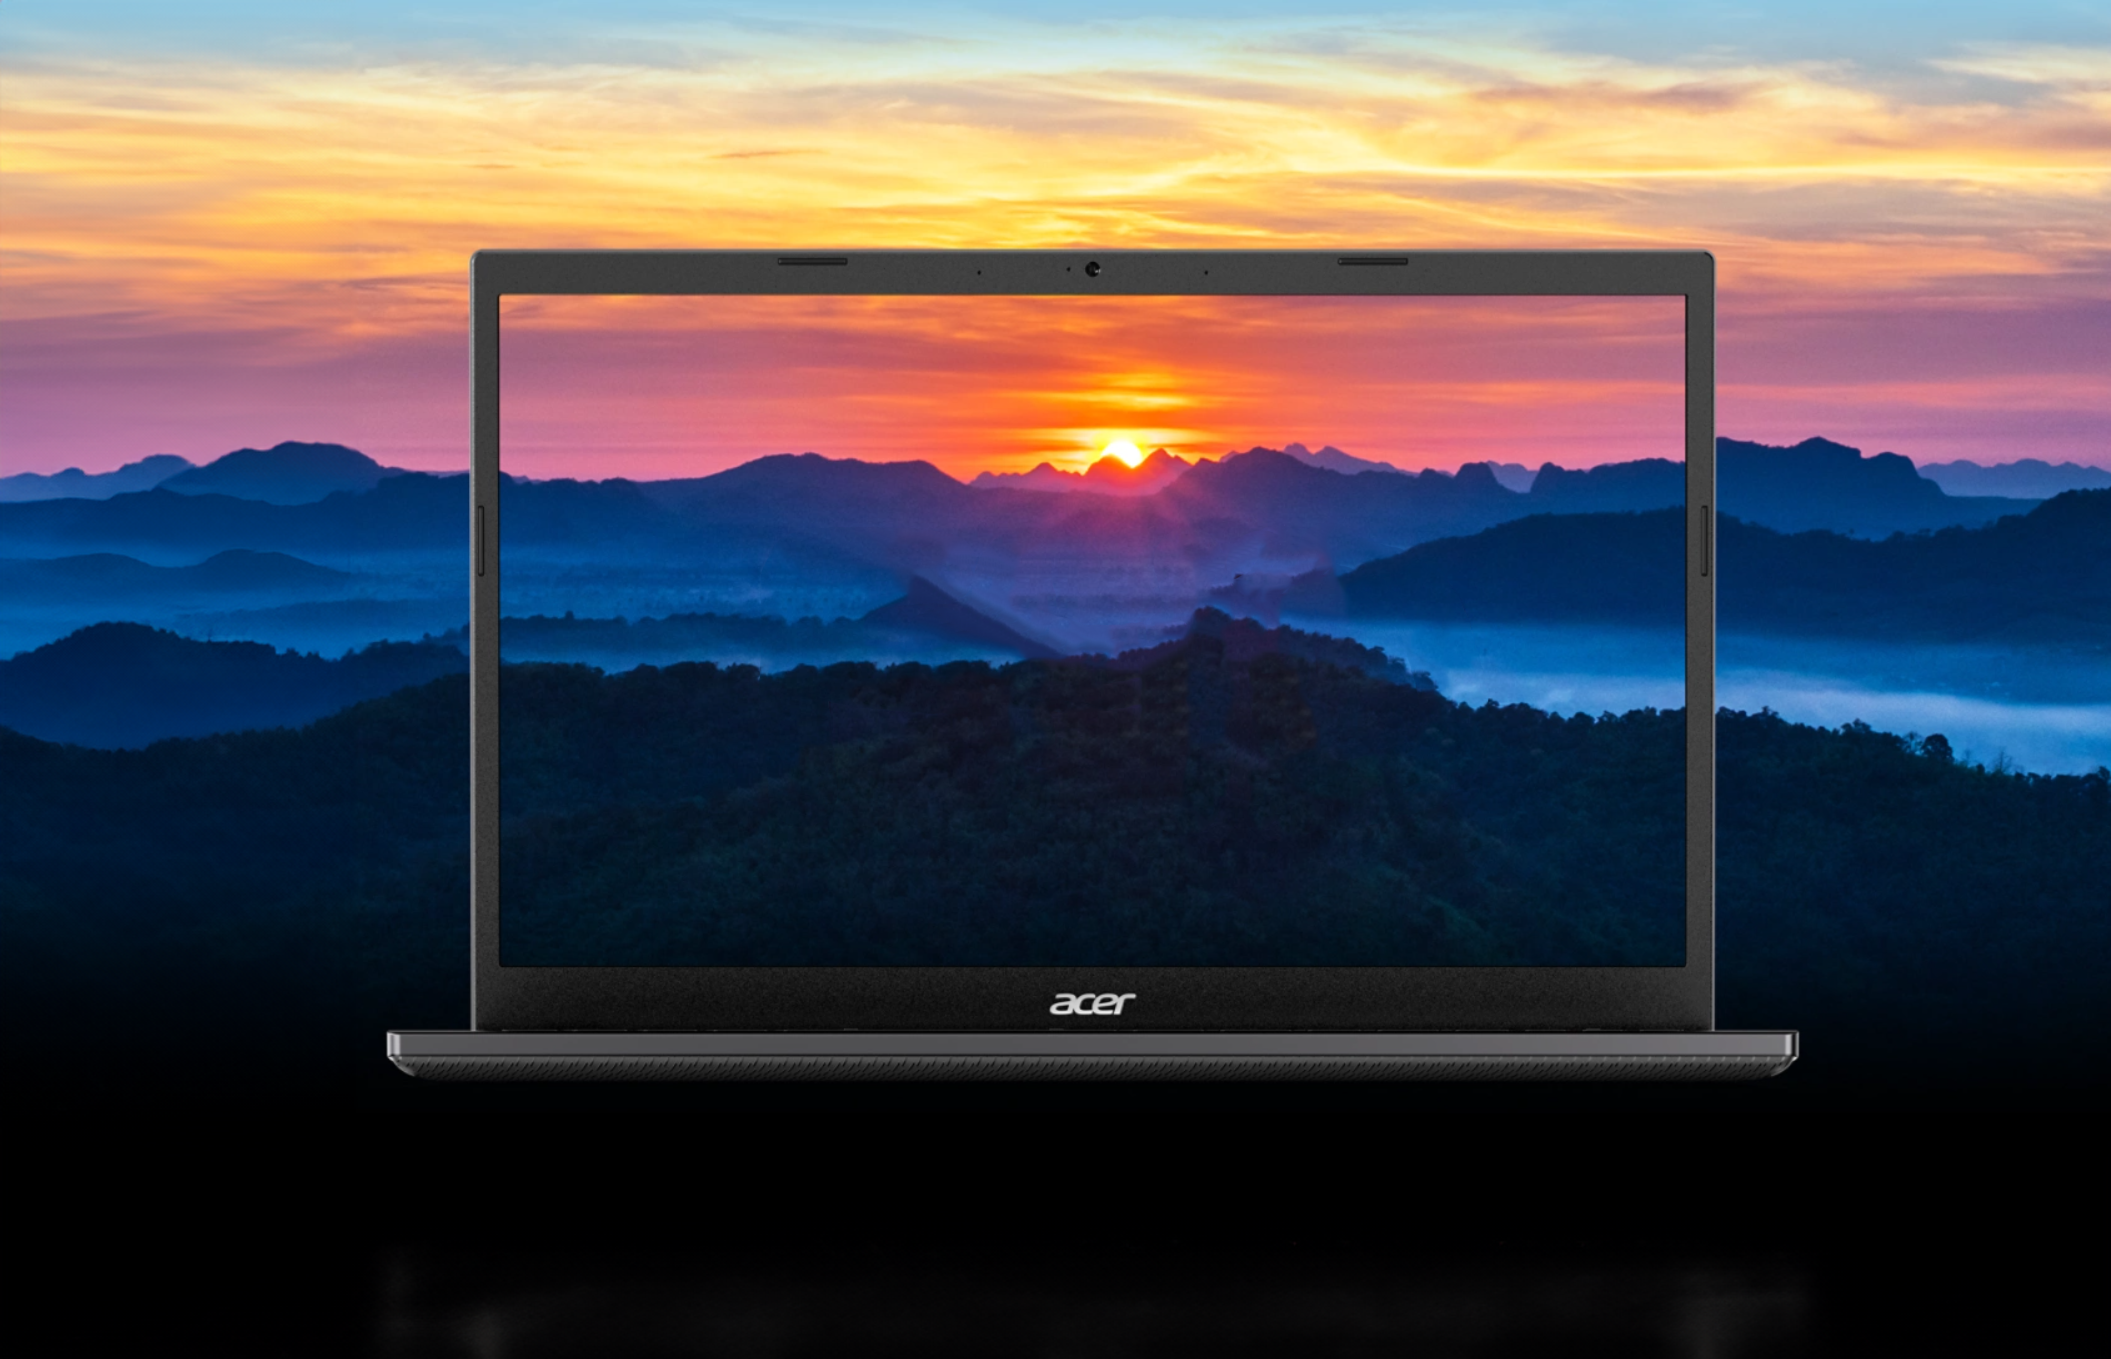 Laptop Acer przedstawiający zdjęcie wschodu słońca nad górskim łańcuchem i mglistą doliną.